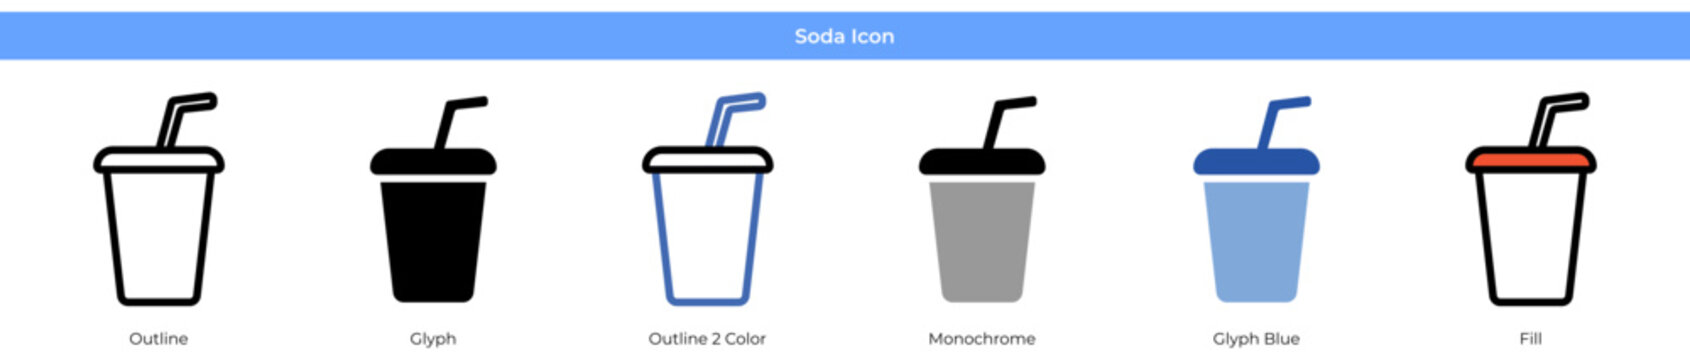 Soda Icon Set